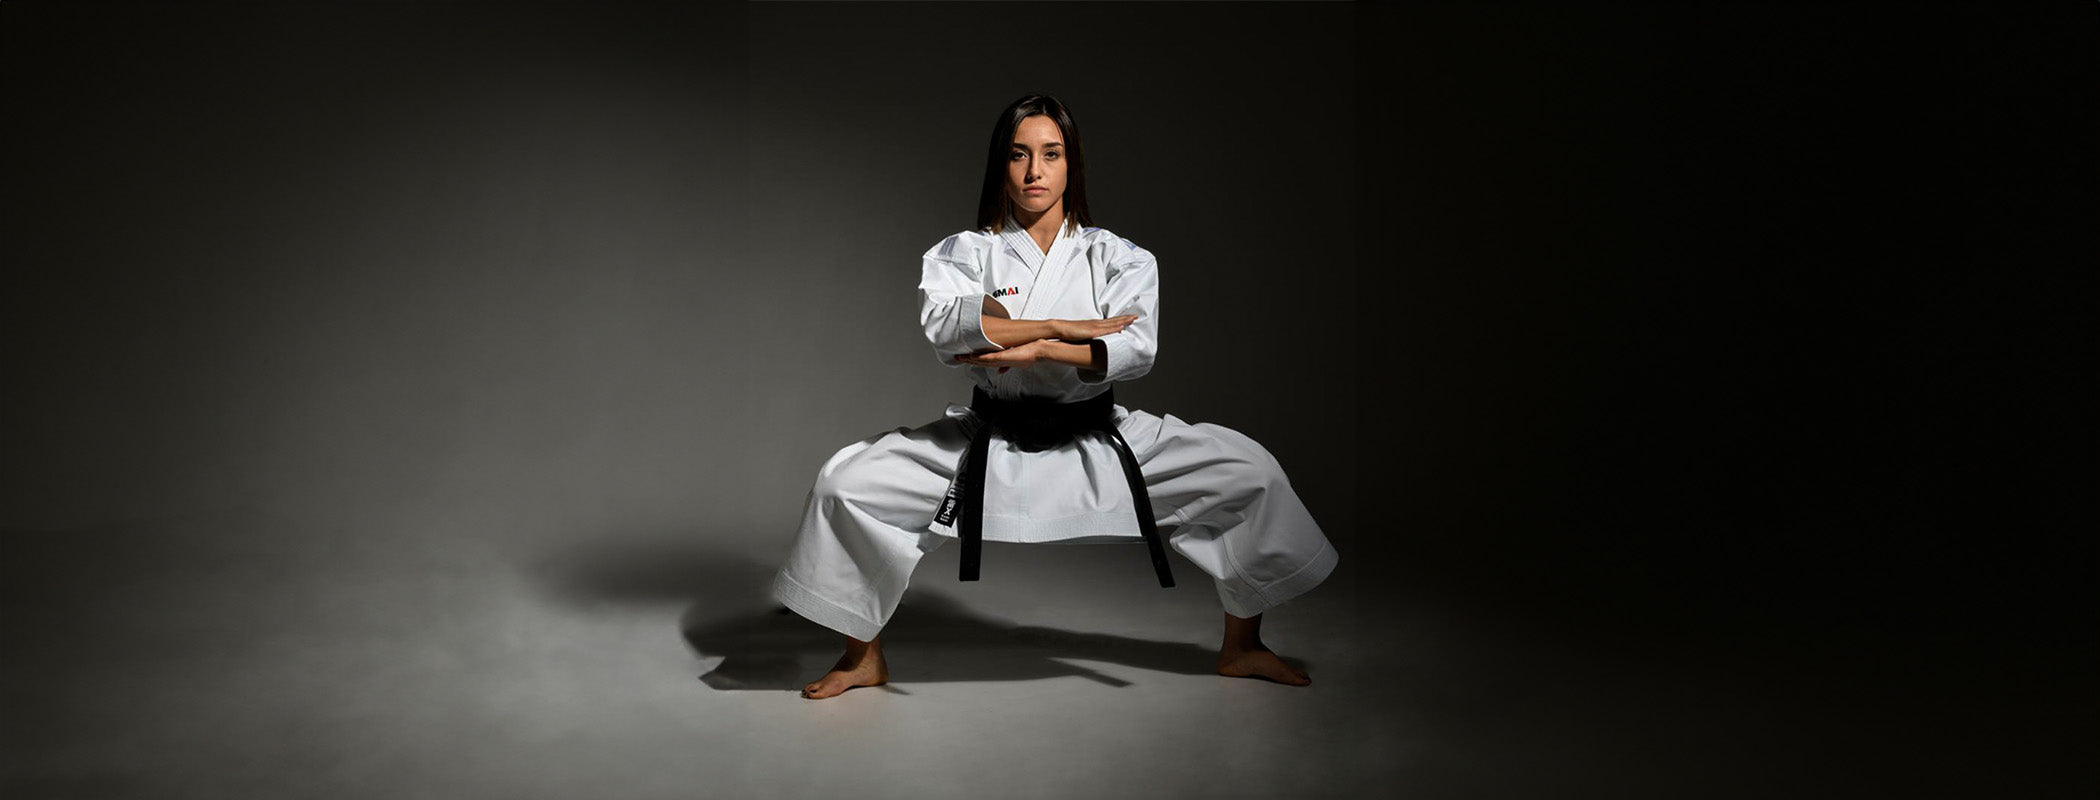 Carola Casale SMAI Karate Italian Athlete